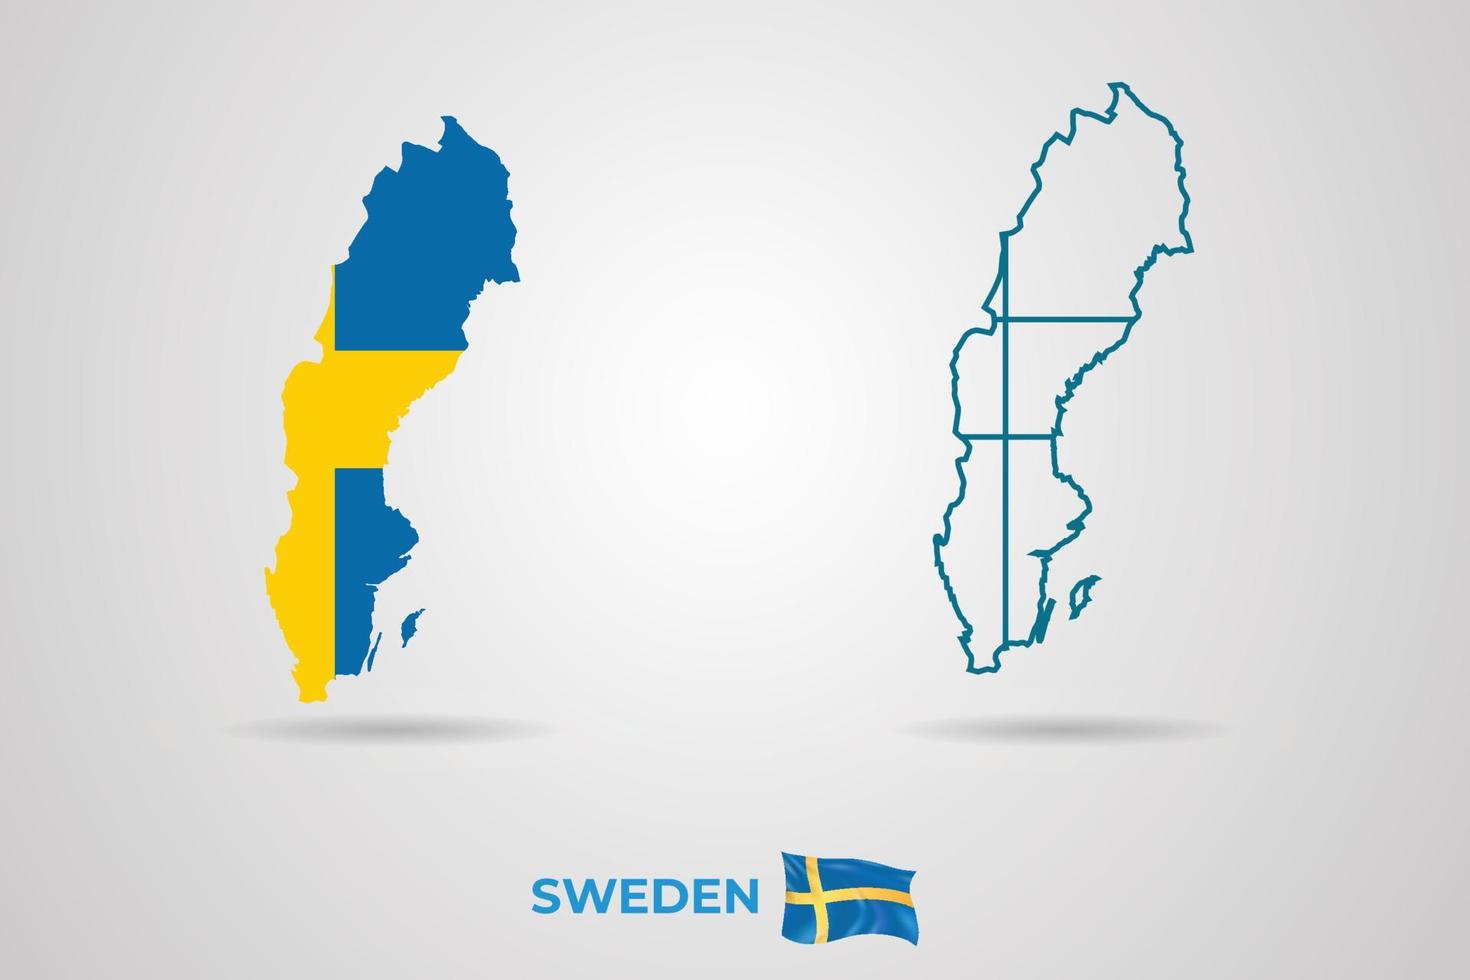 Zweden republiek kaart met vlag, vector illustratie.